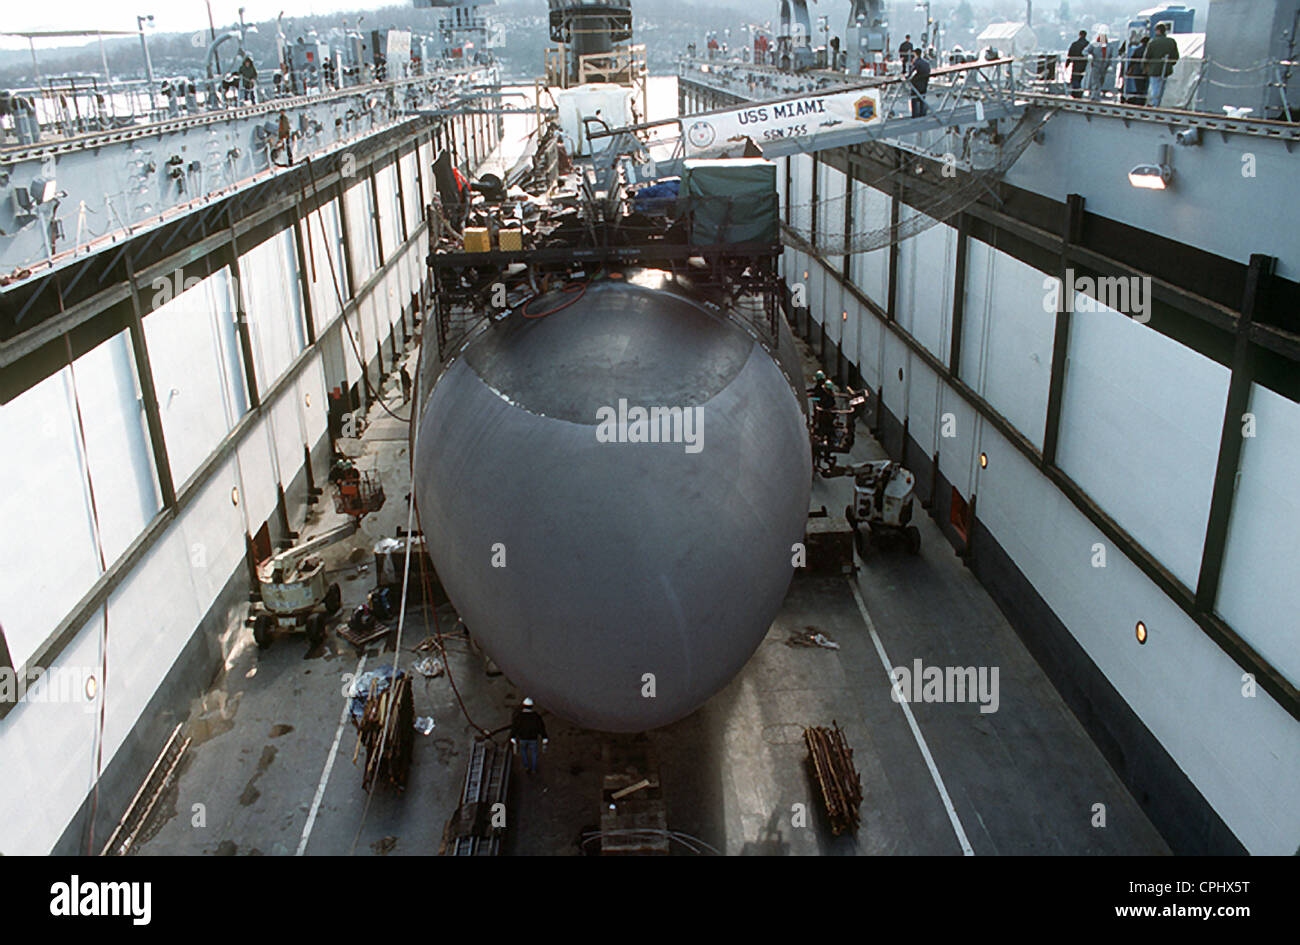 Die Los-Angeles-Klasse nuklearen angetrieben schnellen Angriff u-Boot USS Miami (SSN-755) im Trockendock während einer routinemäßigen Rumpf Inspektion 16. März 1994 in Groton, CT. Stockfoto